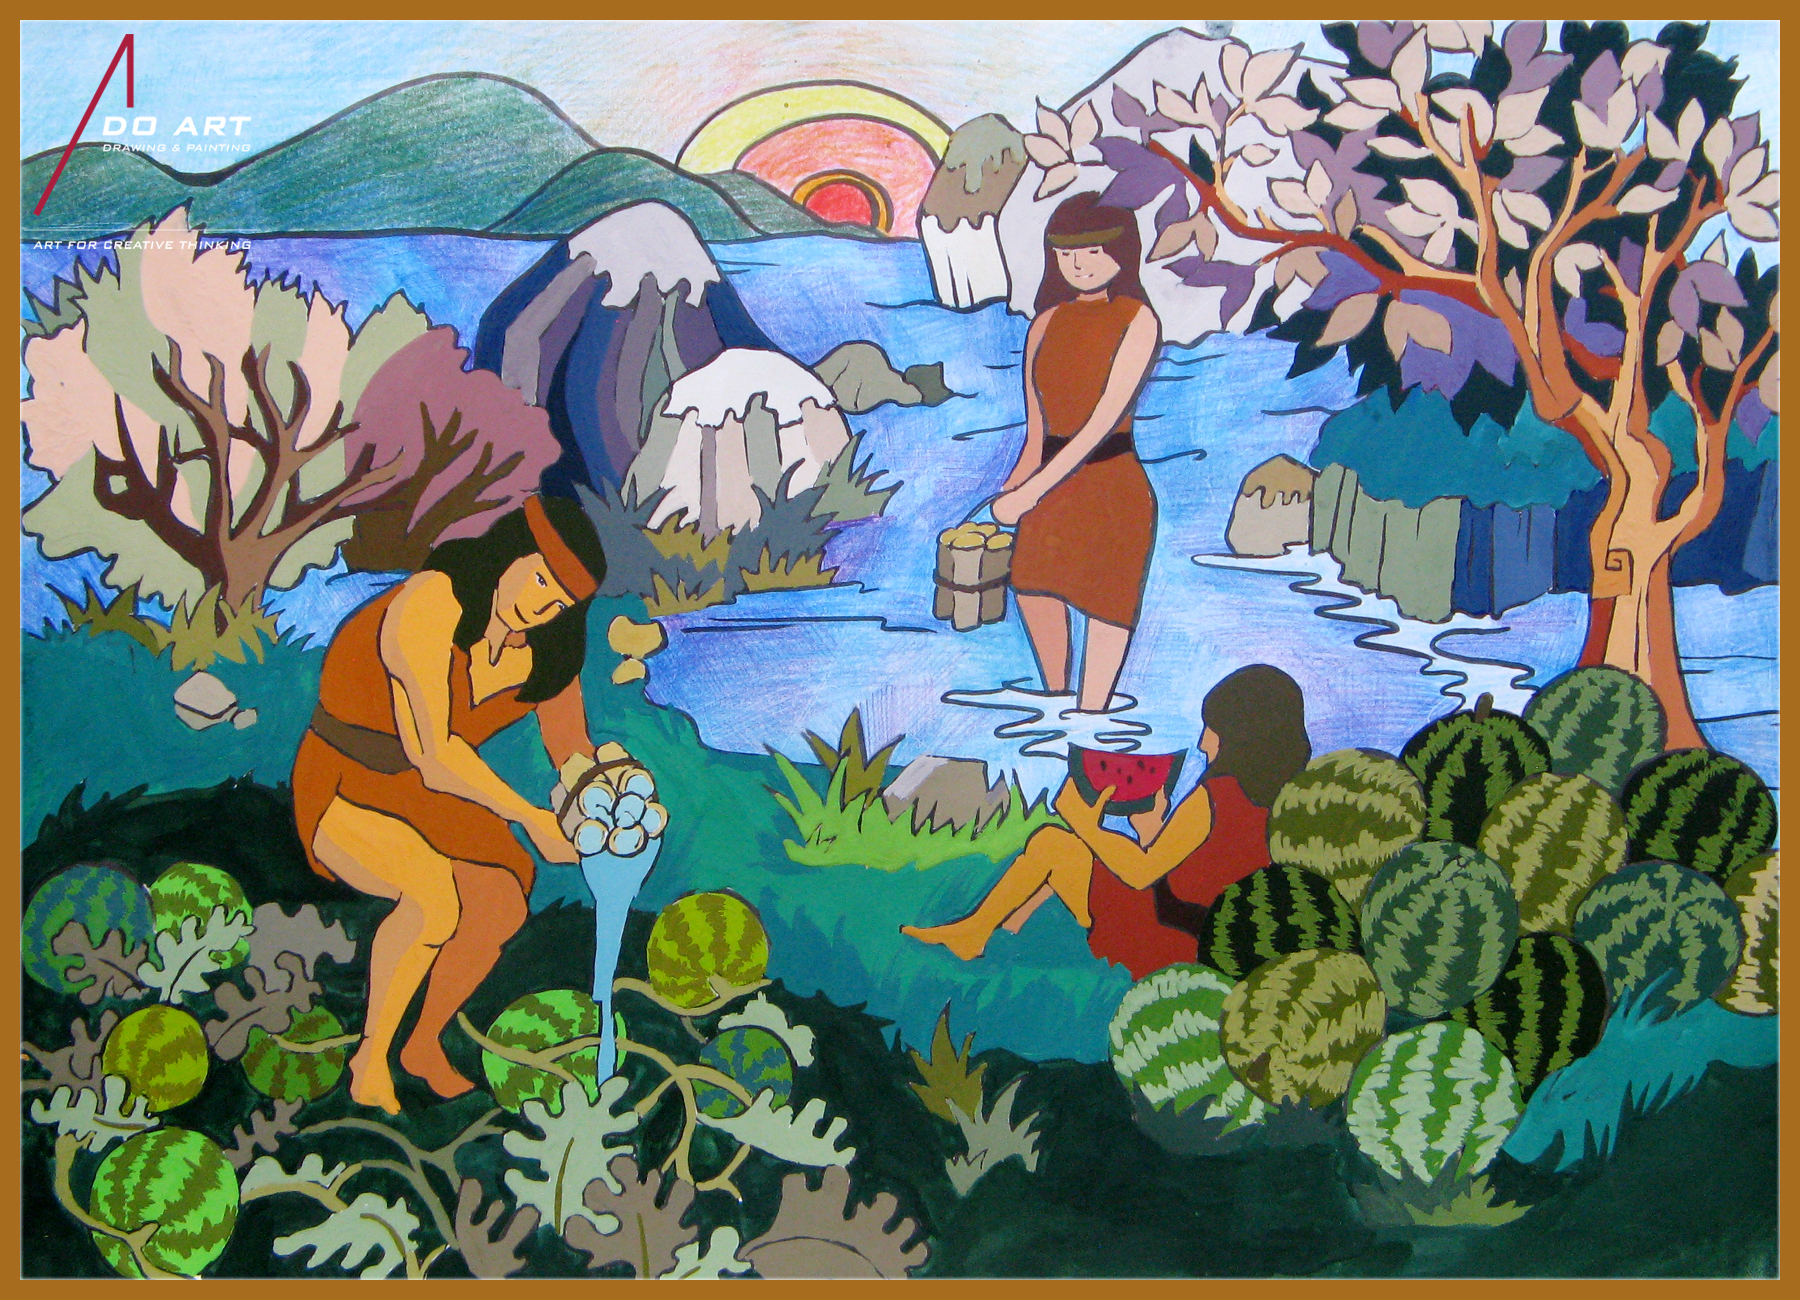 Chuyến phiêu lưu vào thế giới cổ tích từ họa sĩ của đất nước nàng tiên cá